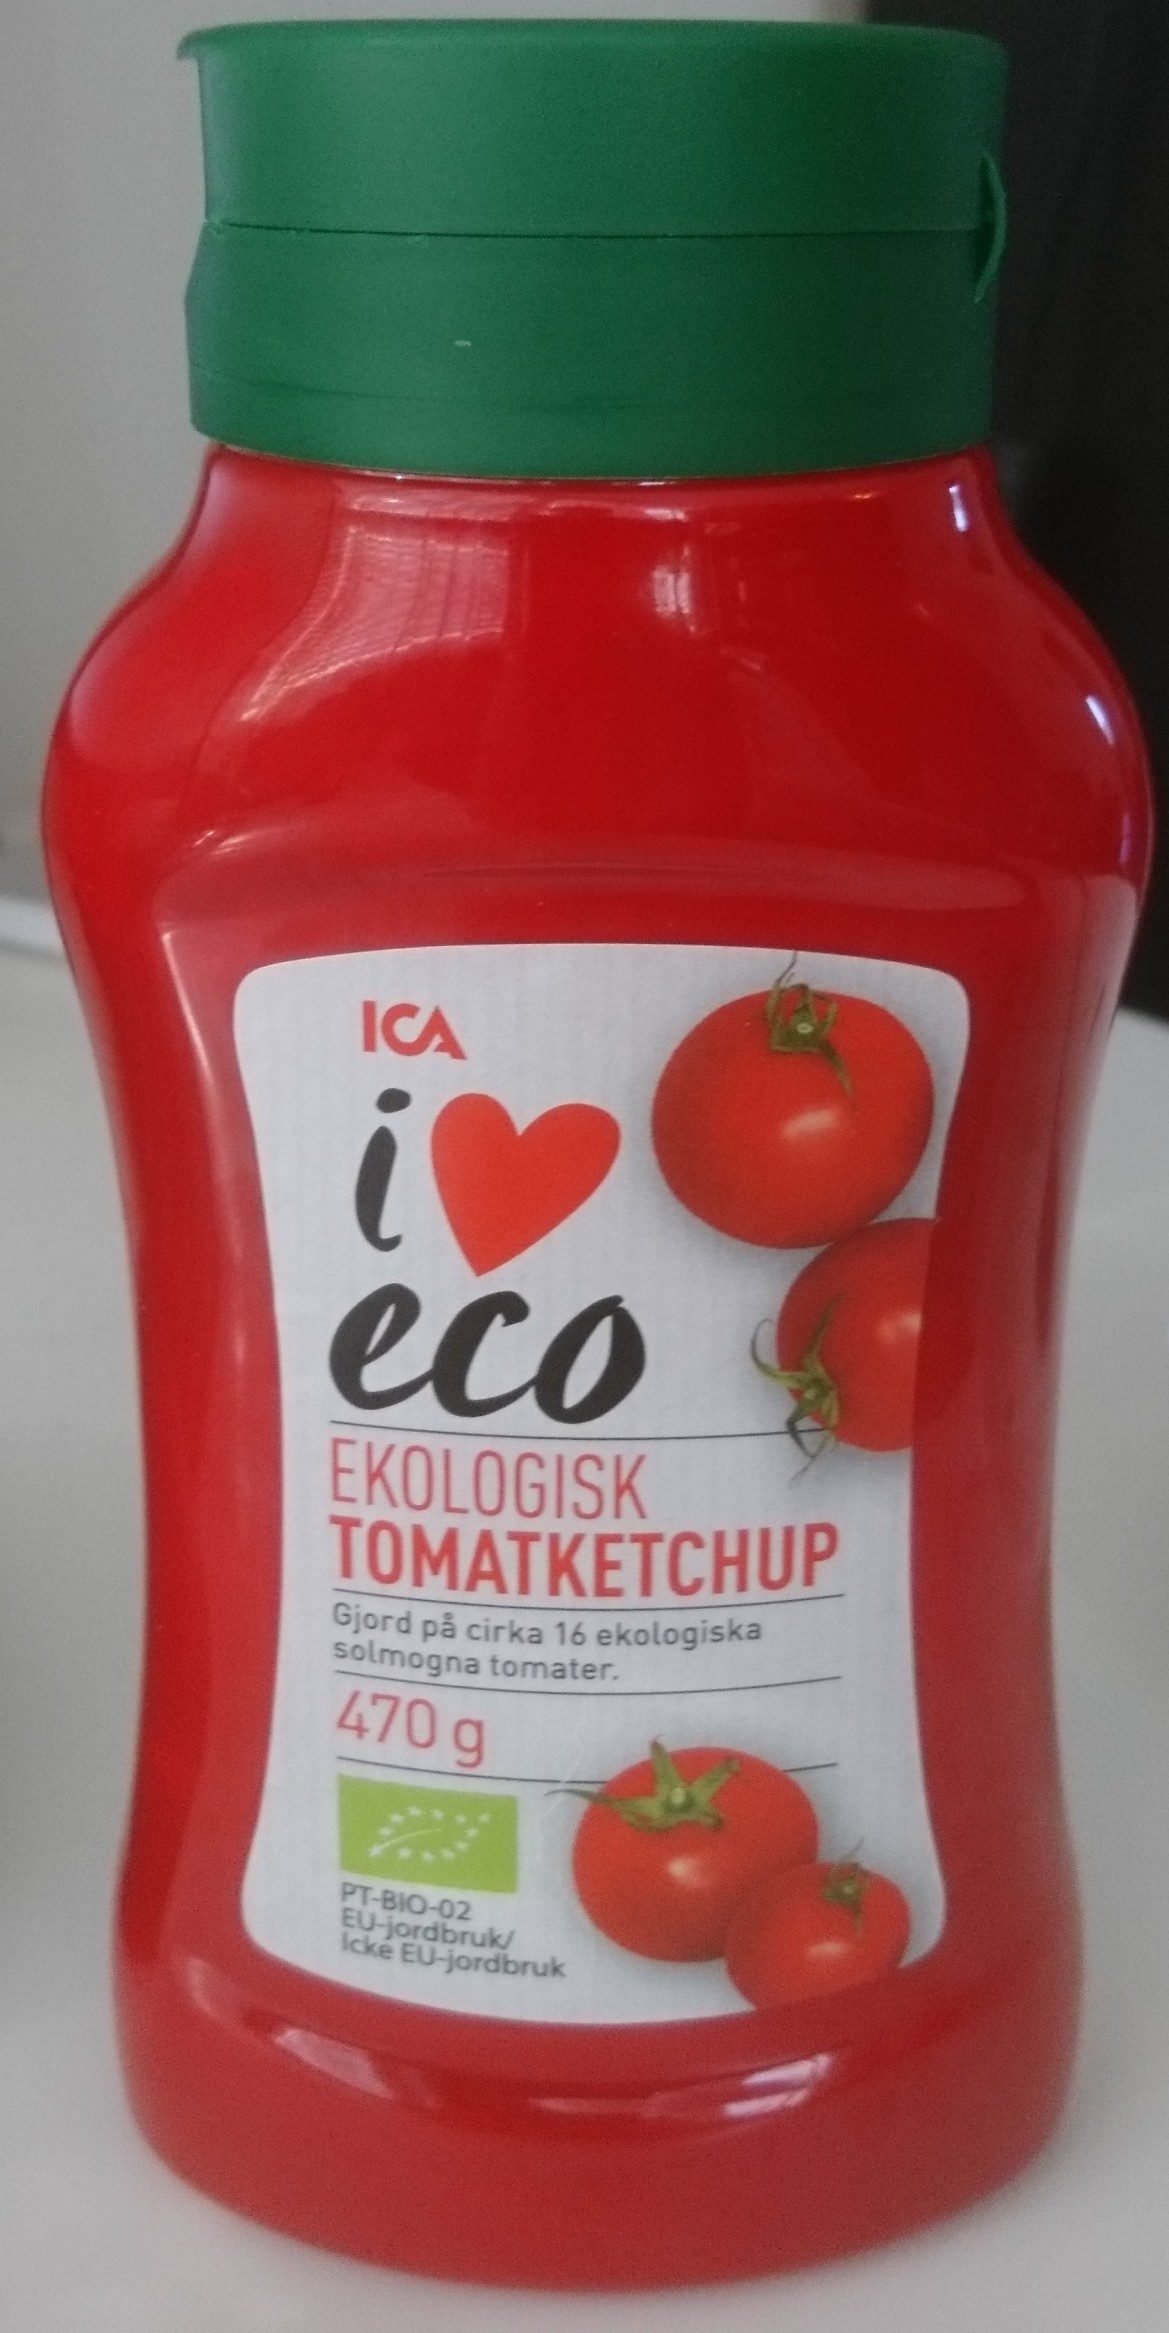 ICA i♥eco Ekologisk tomatketchup - Produkt